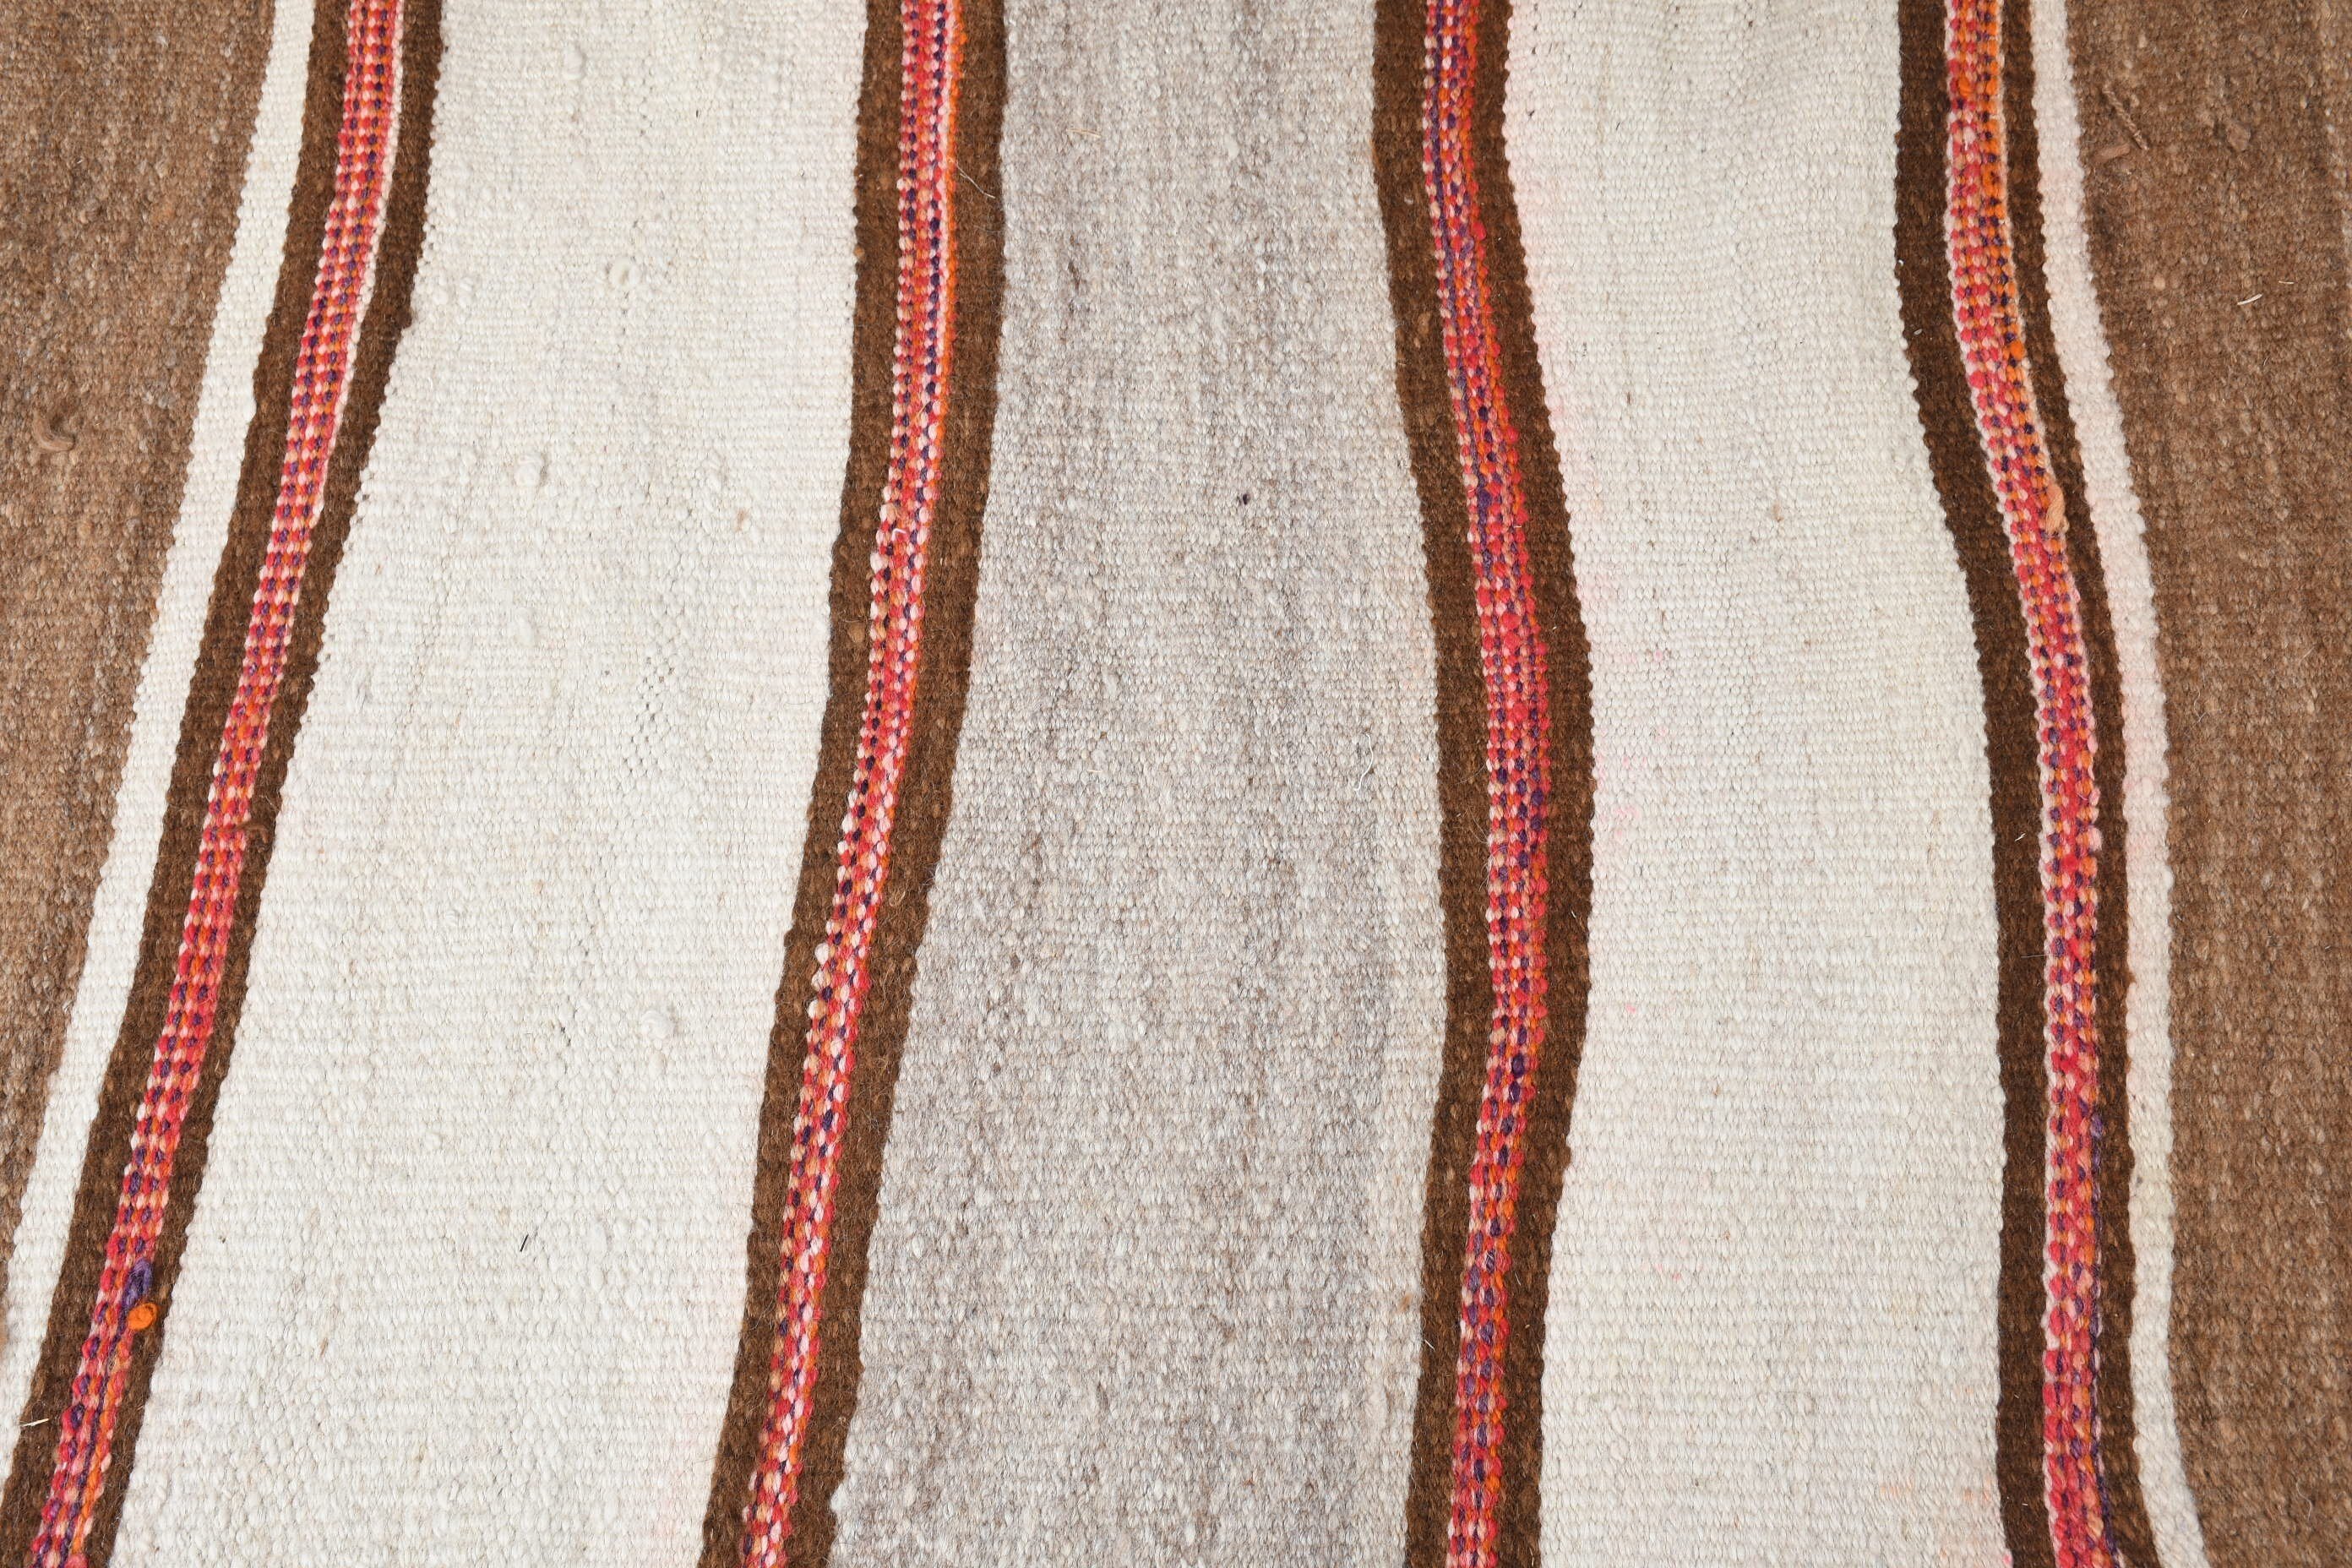 Oriental Rugs, Rugs for Stair, Kilim, Vintage Rug, Beige Oriental Rugs, Turkish Rug, Moroccan Rugs, 2.6x12.1 ft Runner Rug, Kitchen Rugs